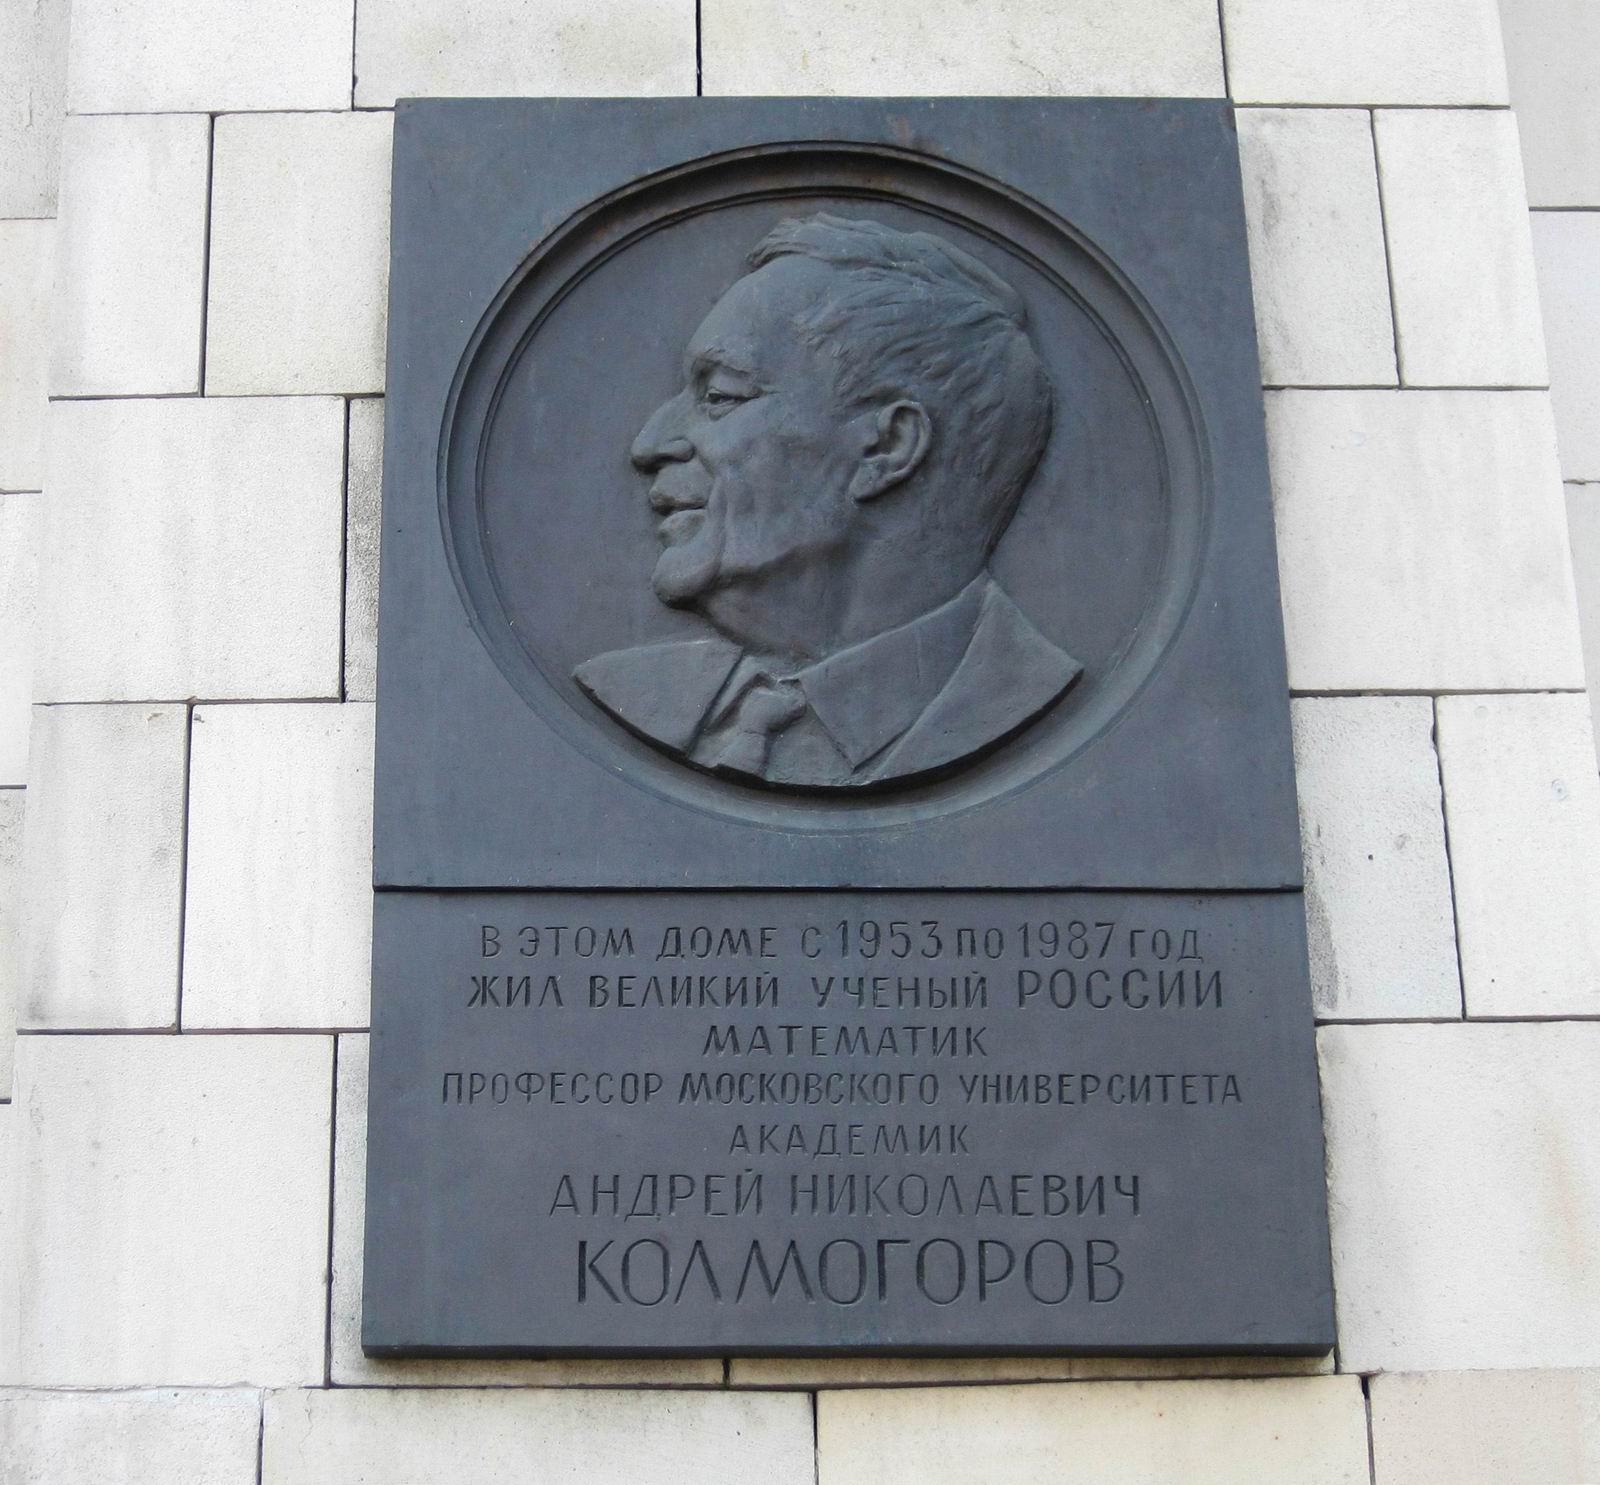 Мемориальная доска Колмогорову А.Н. (1903-1987), на Ленинских горах, дом 1л (Главное здание МГУ, правая дальняя башня).